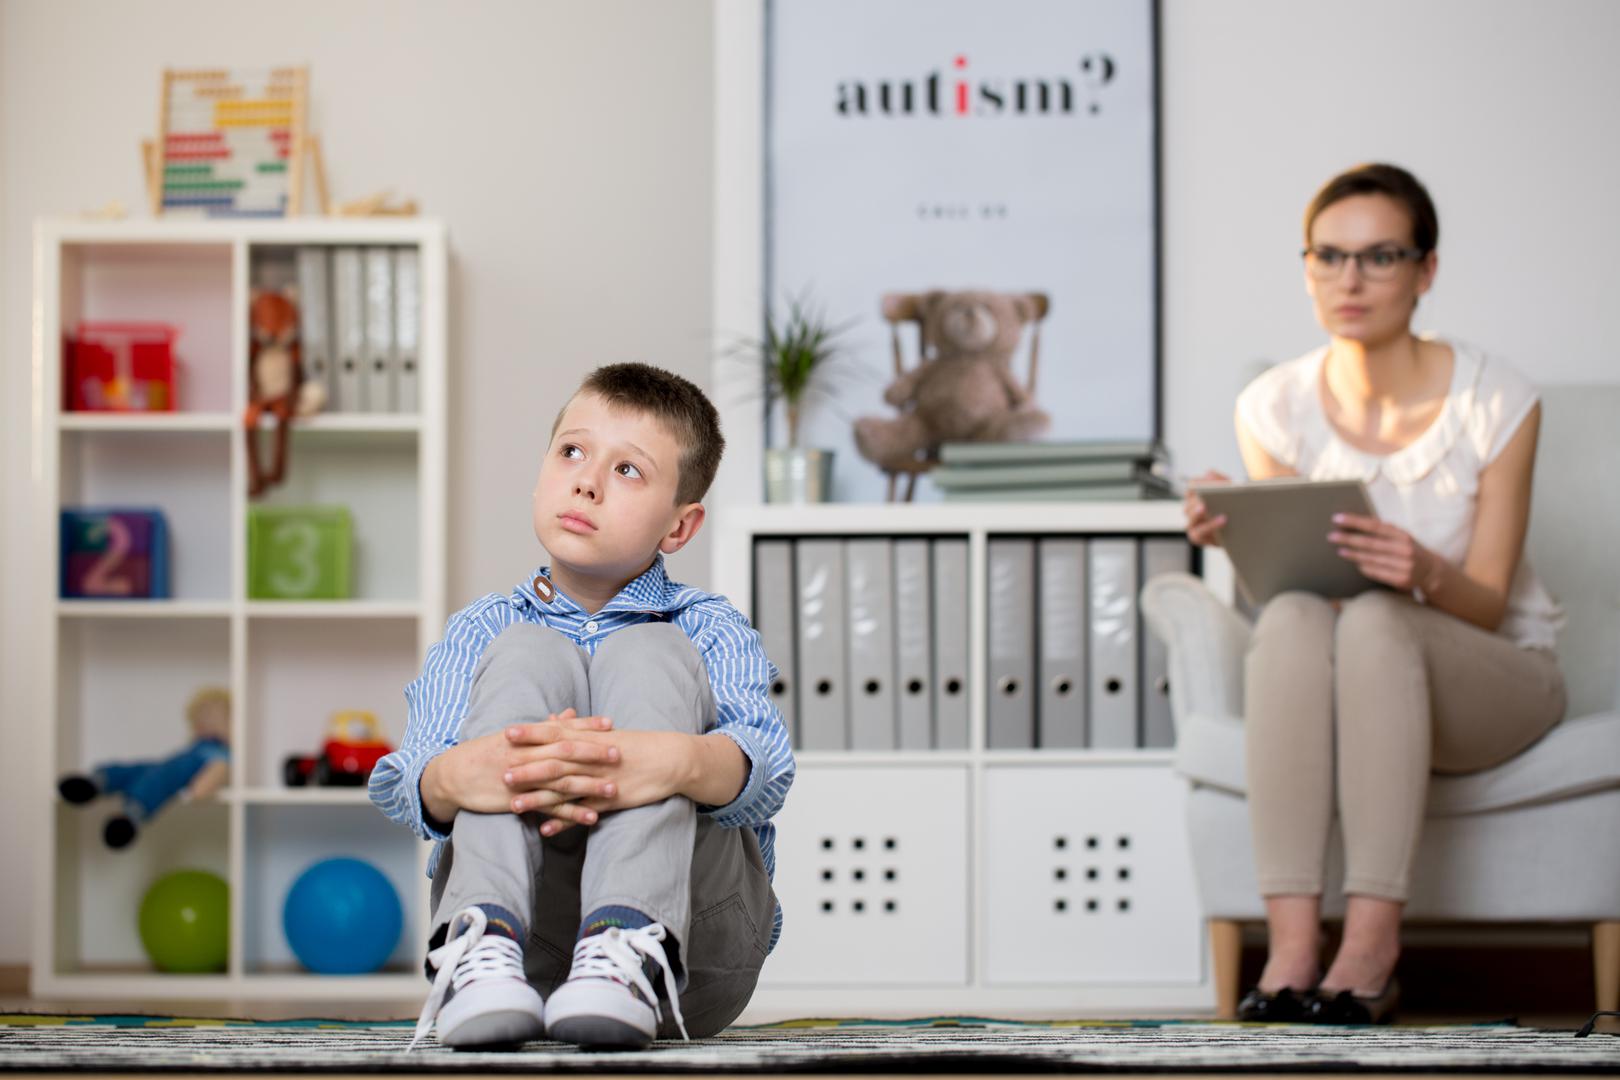 Poremećaji autističnog spektra (ASD) obuhvaćaju niz poremećaja rane dječje dobi kojima je uzrok nepoznat, a odnose se prvenstveno na društvene, komunikacijske i bihevioralne probleme